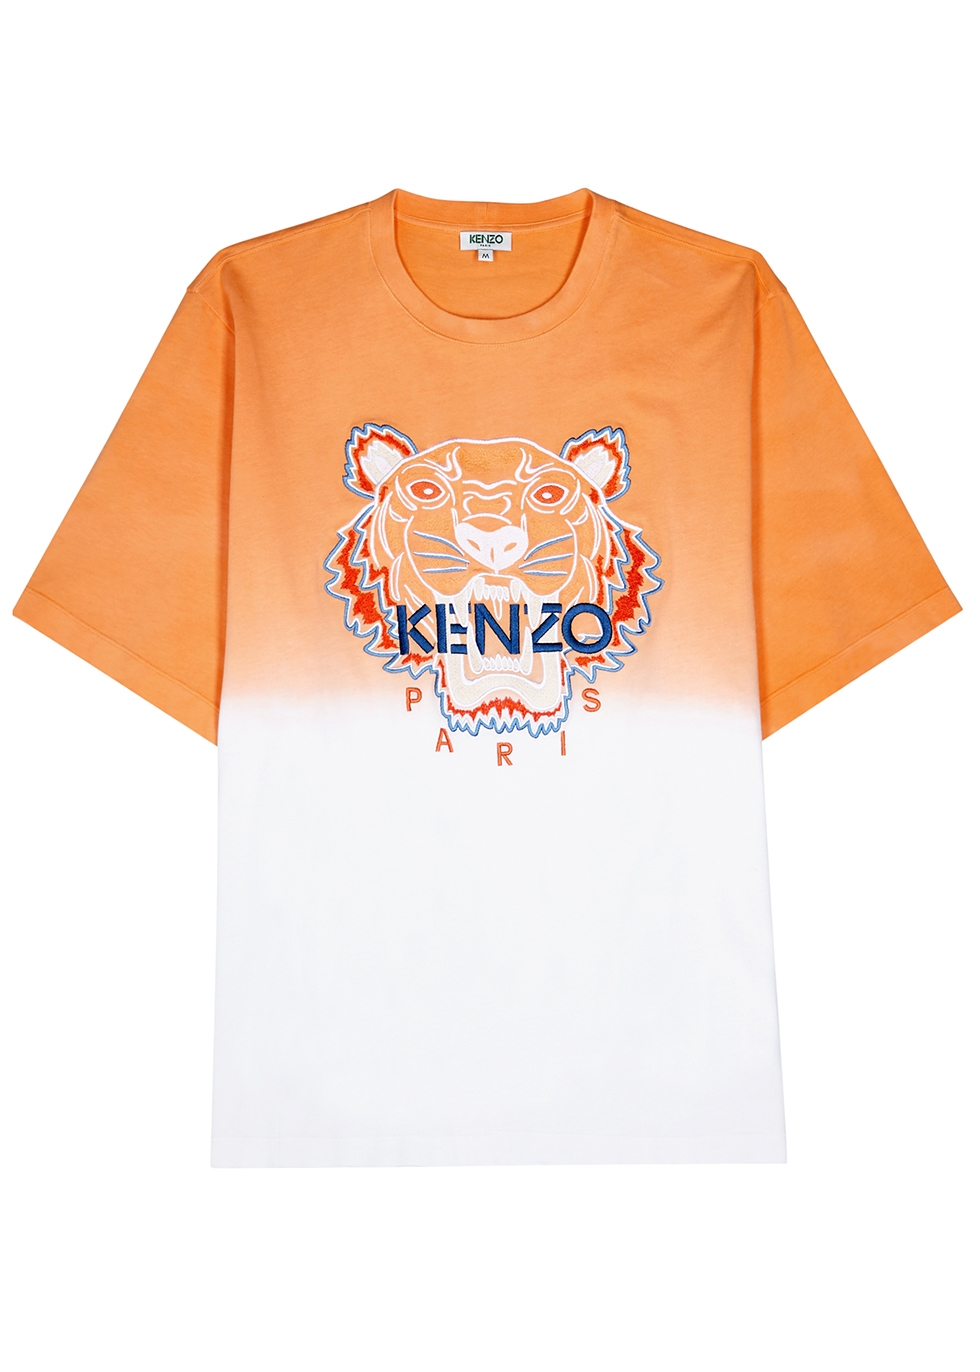 white and orange kenzo shirt